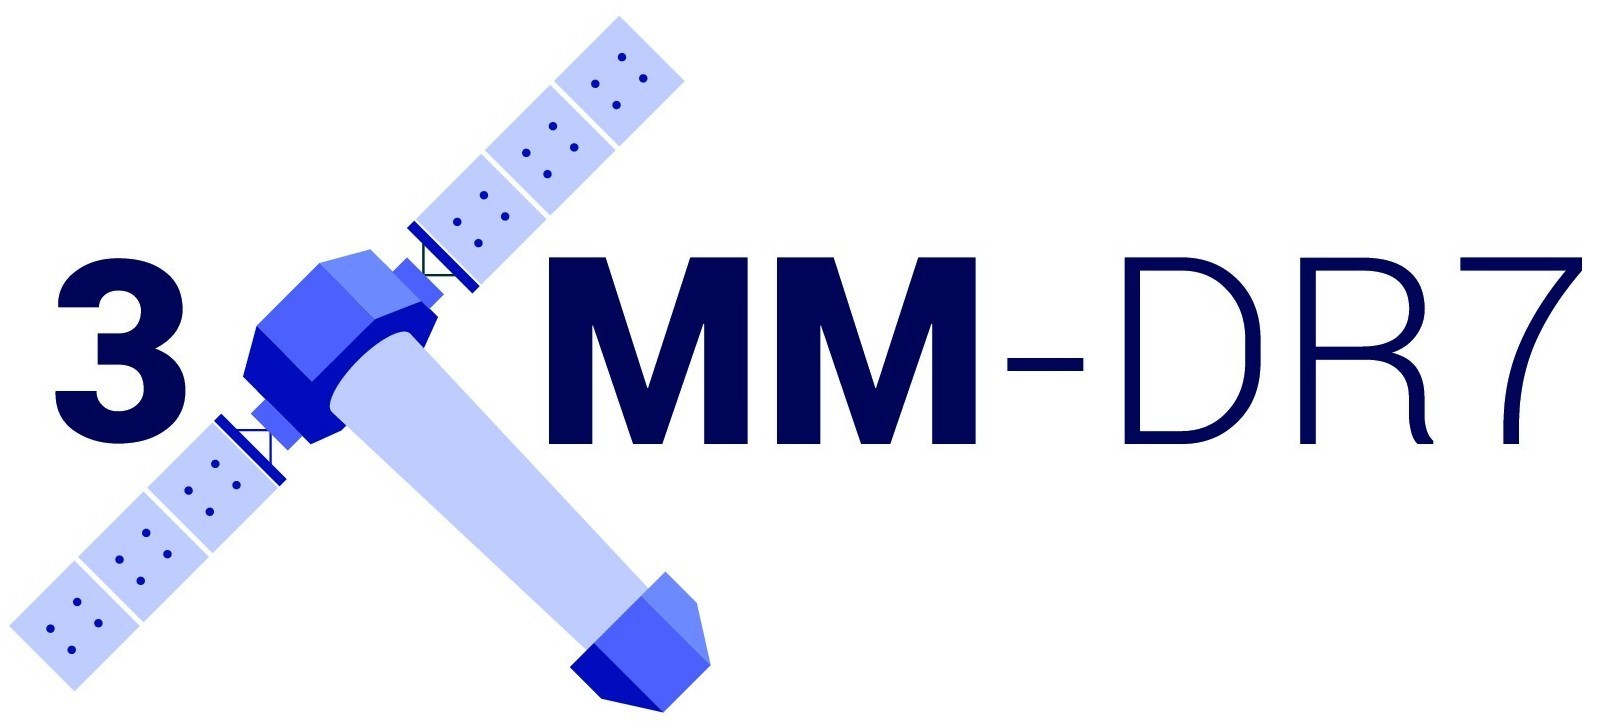 3XMM-DR7 logo